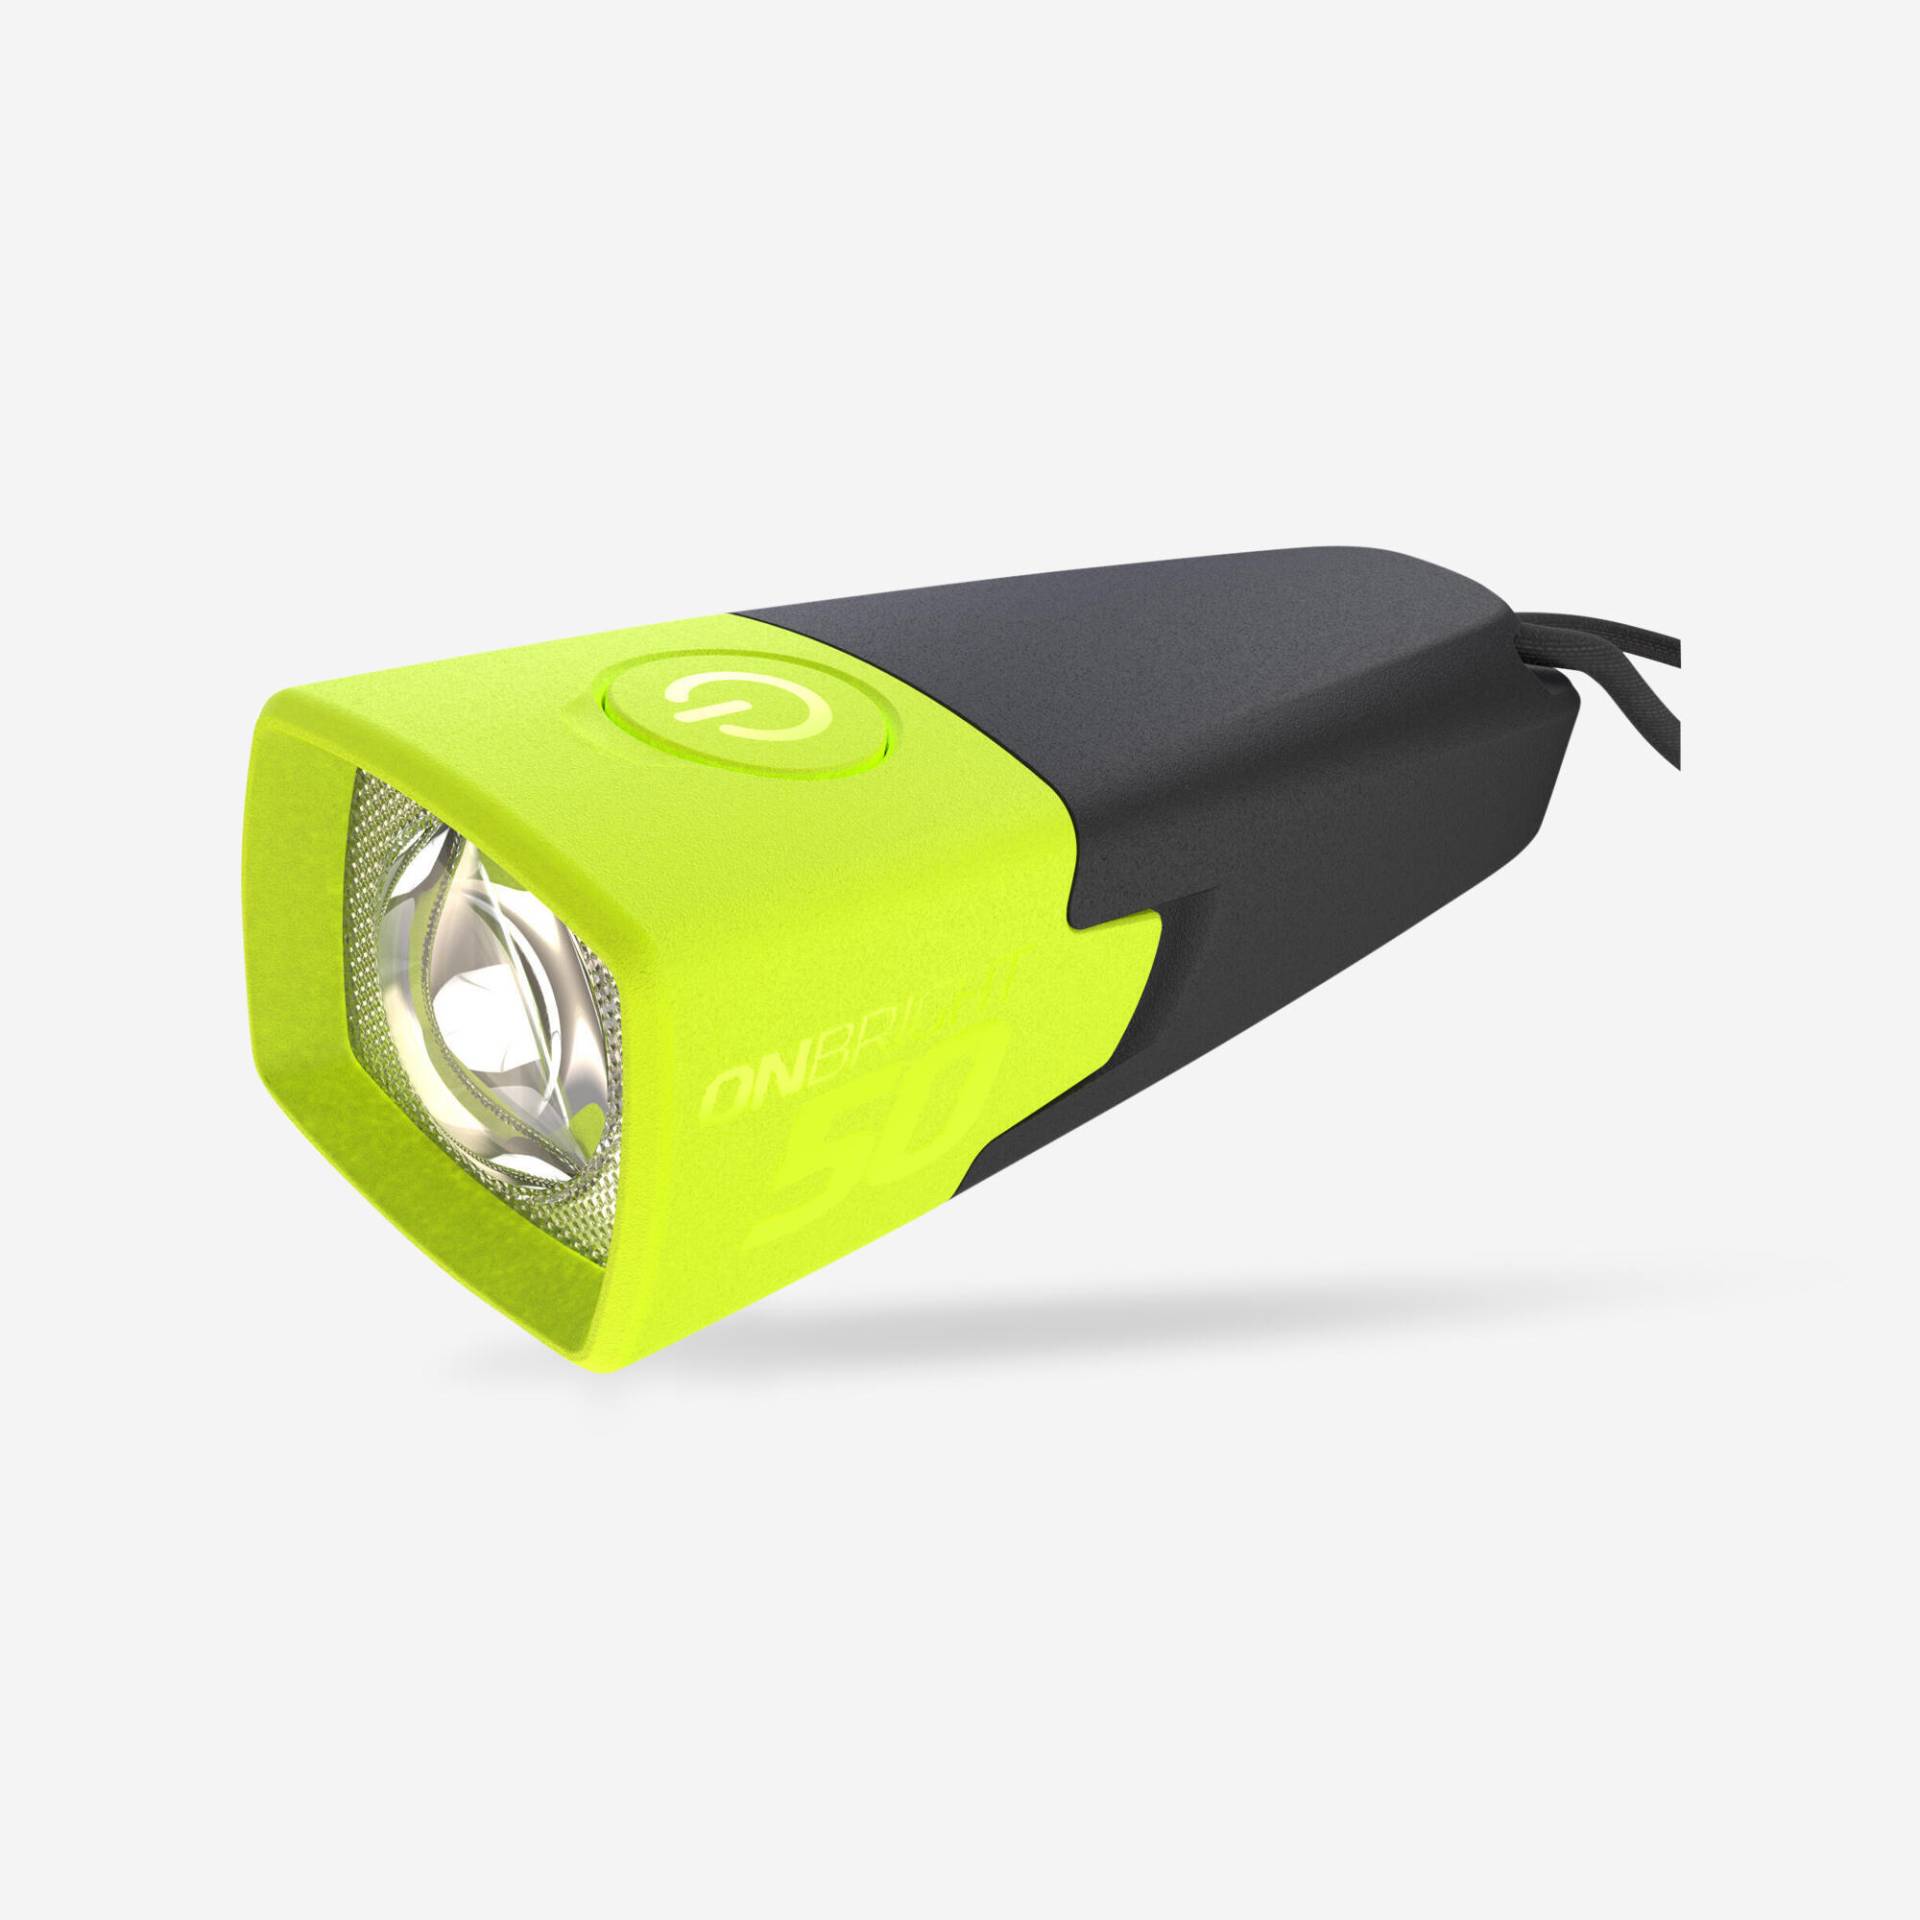 Taschenlampe ONbright 50 batteriebetrieben 10 Lumen von FORCLAZ